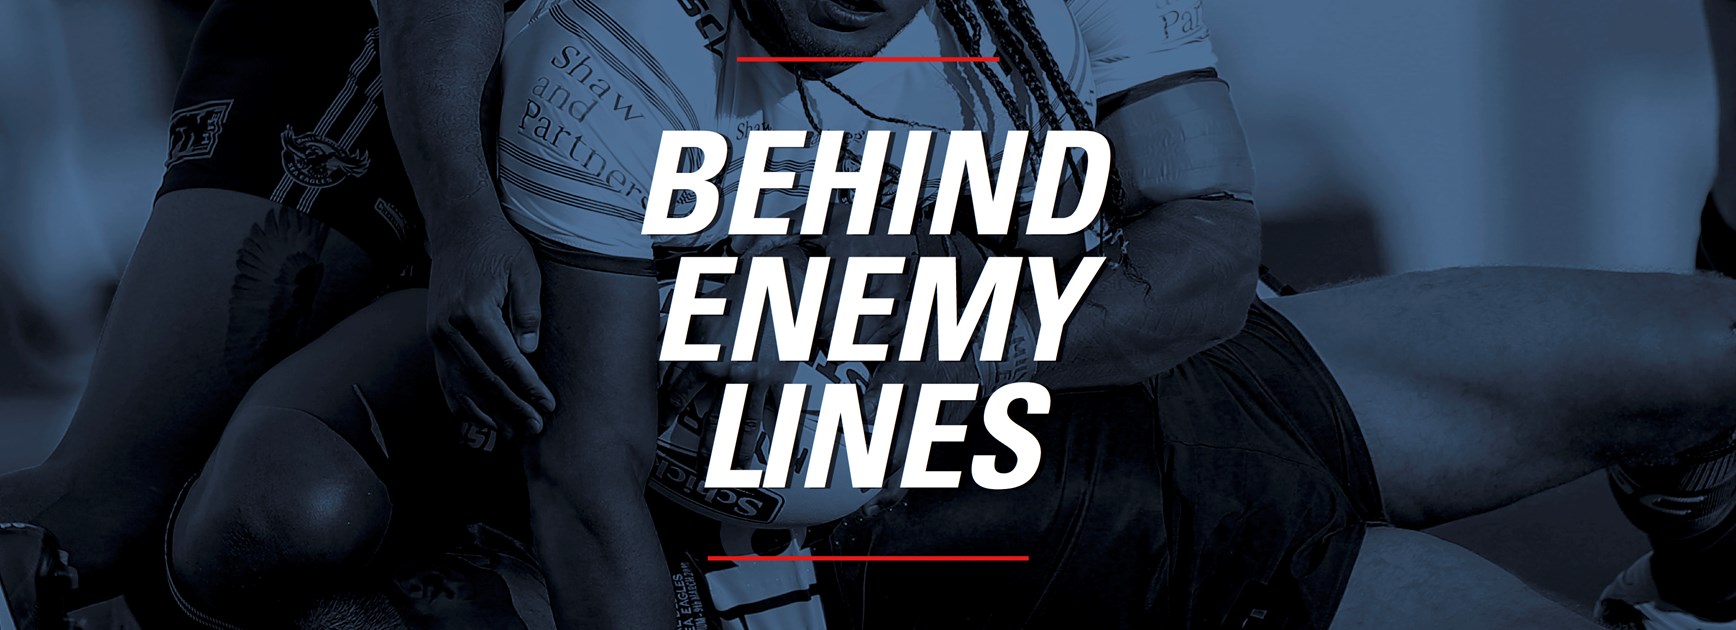 Behind Enemy Lines - Round 8